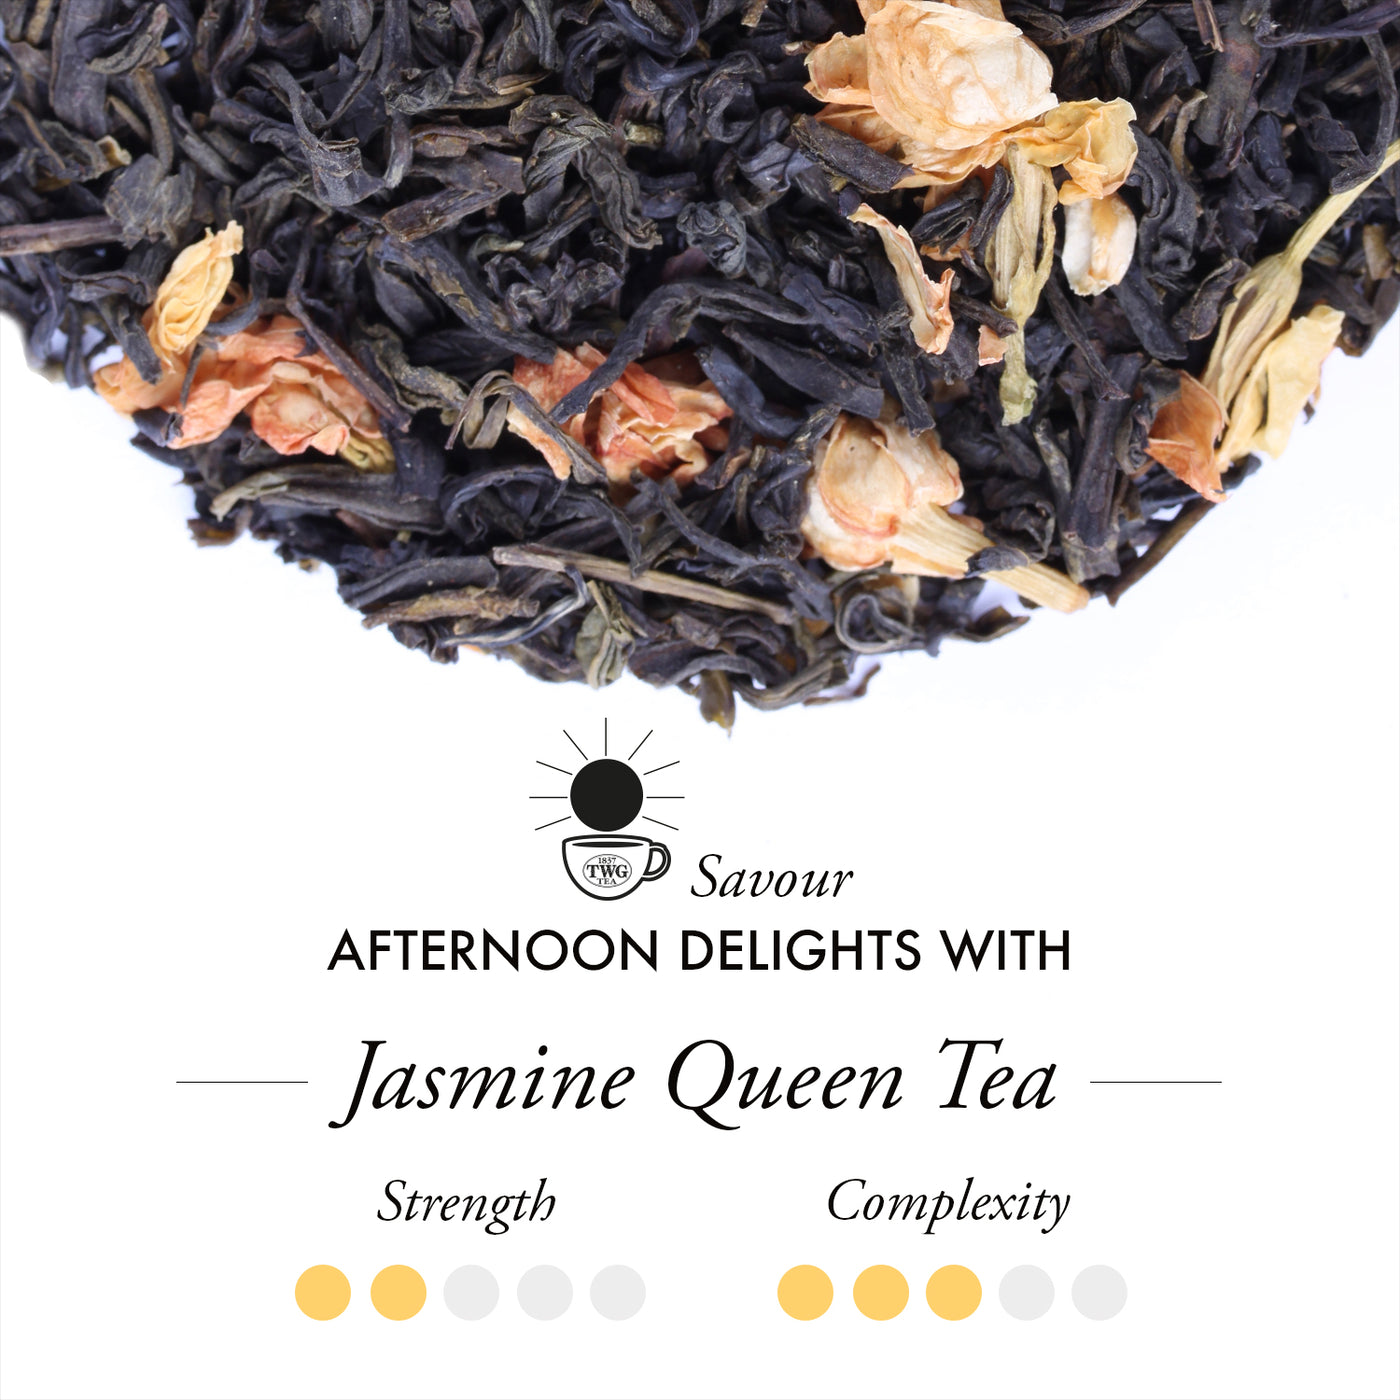 Jasmine Queen Teabags (15 Teabags)